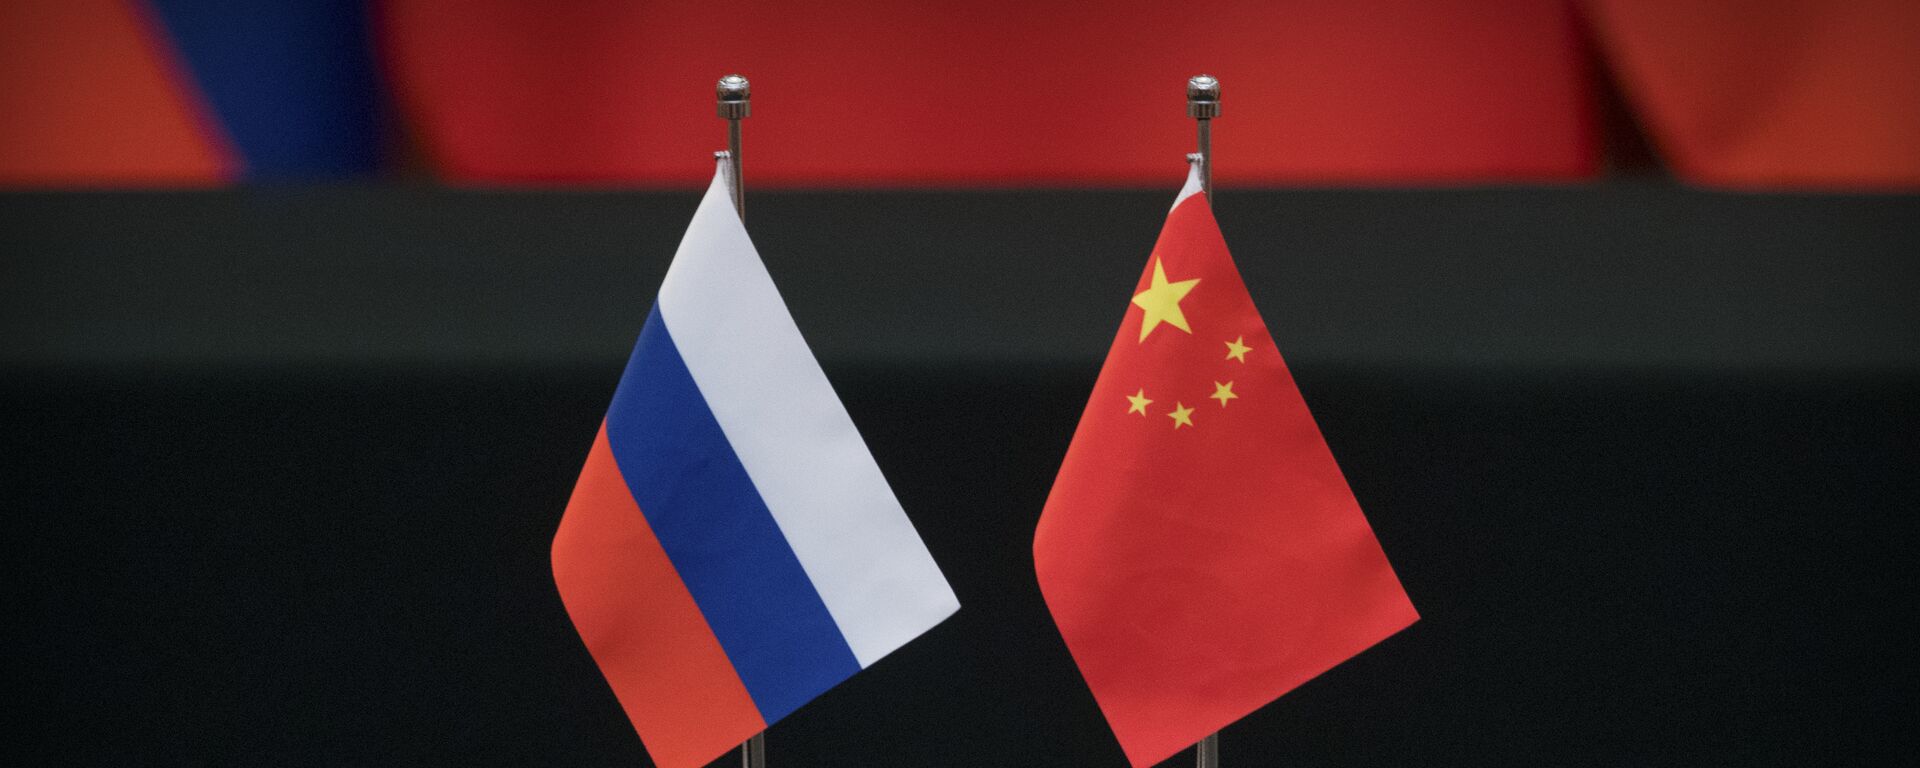 Las banderas de Rusia y China - Sputnik Mundo, 1920, 06.10.2021